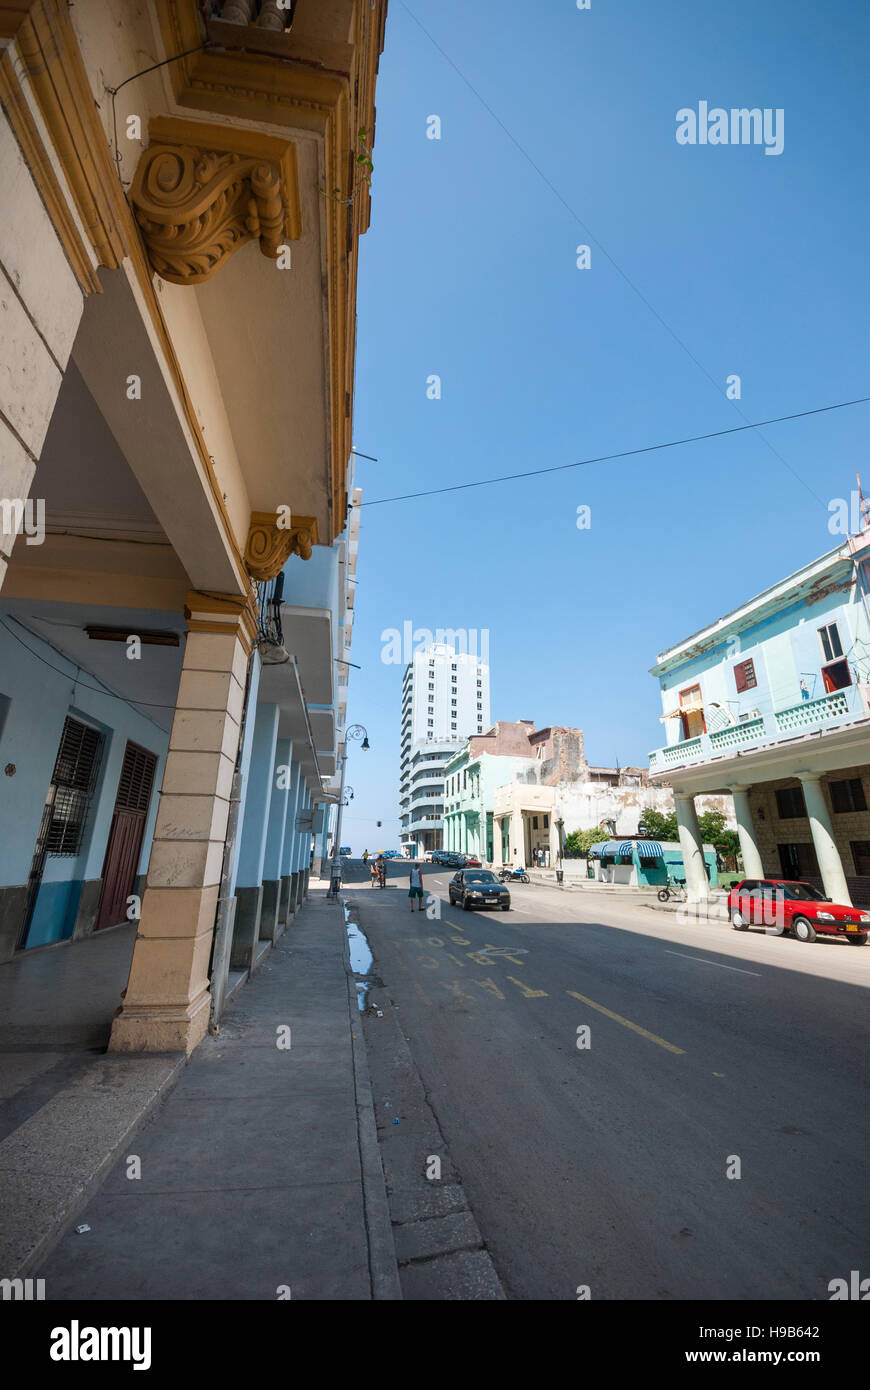 Una scena di strada nella città dell Avana Cuba appena a sud di Malecon Foto Stock